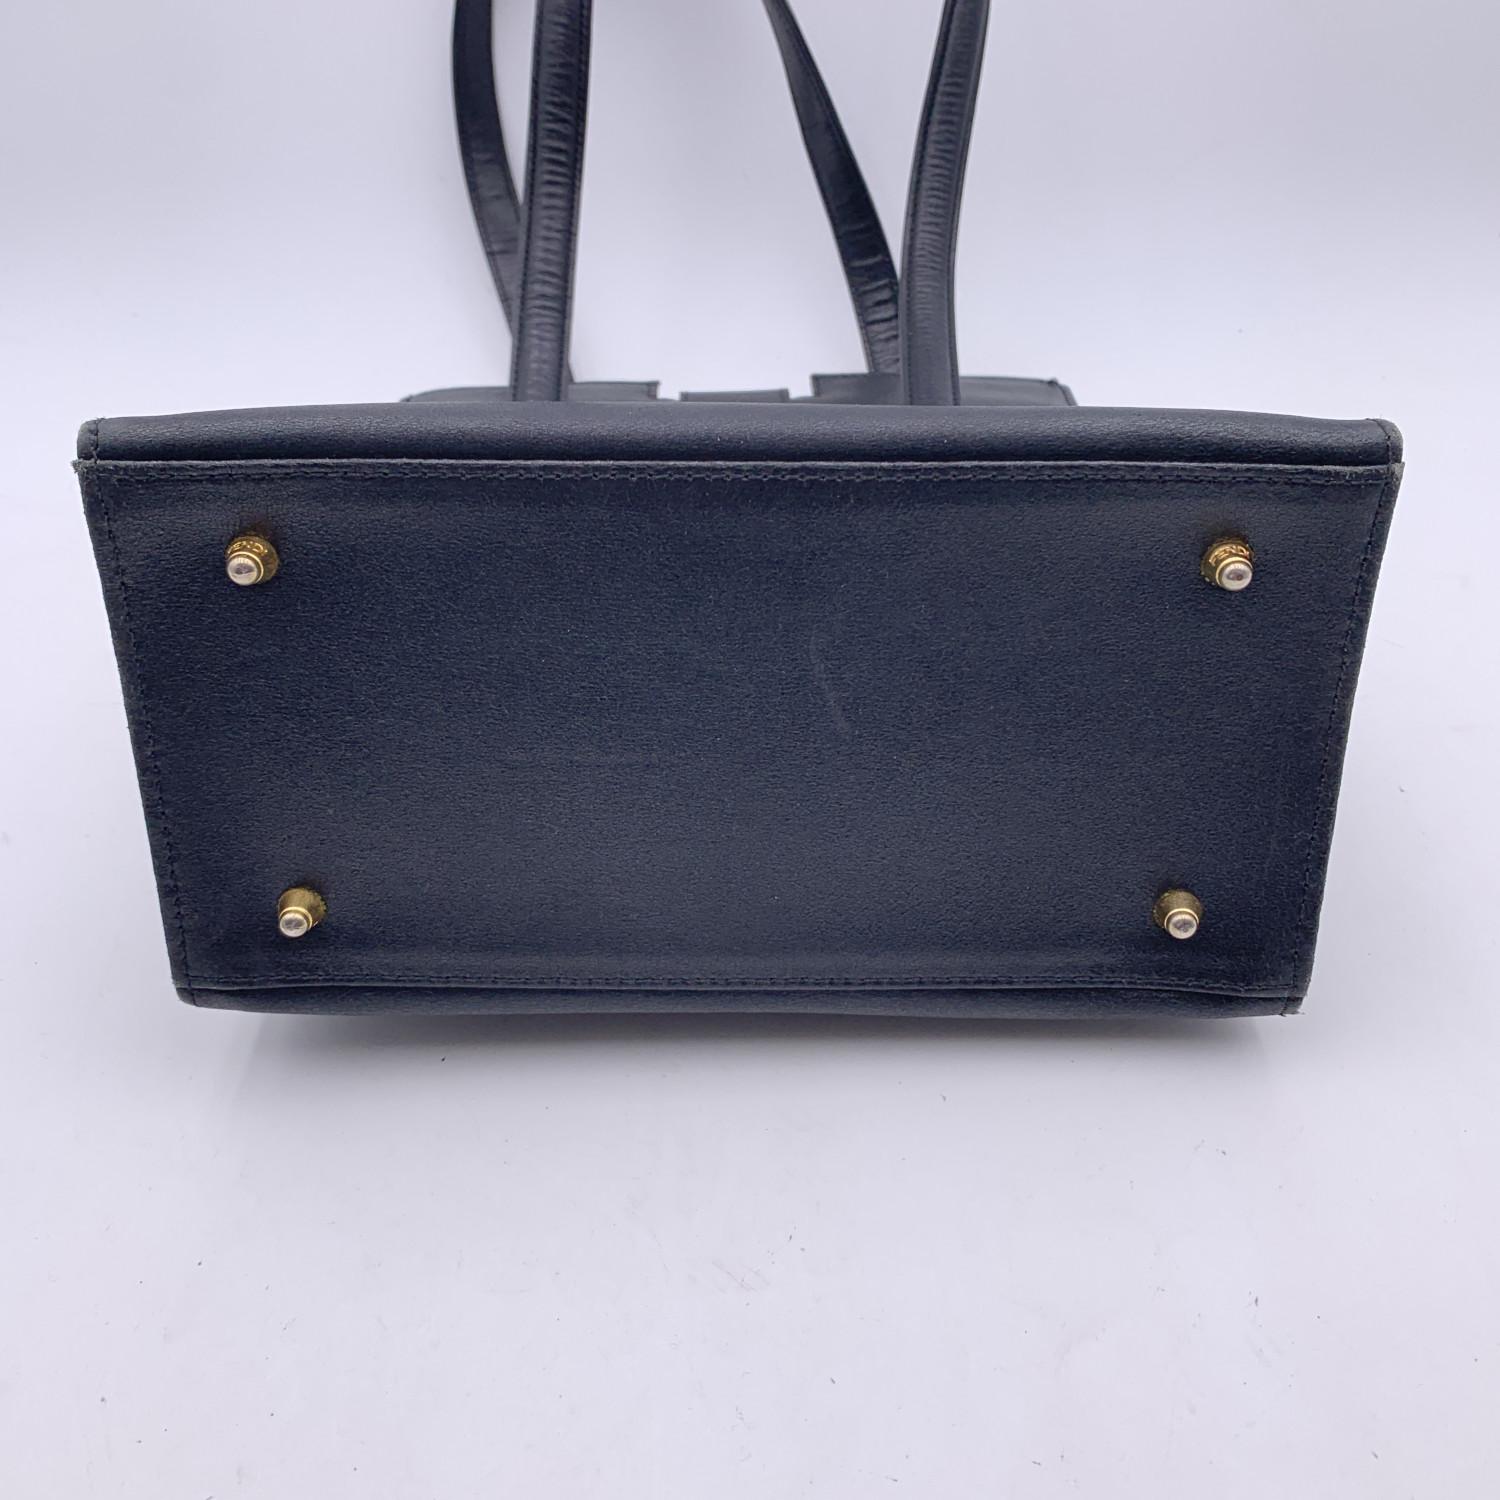 Women's Fendi Vintage Black Leather Tote Shoulder Bag